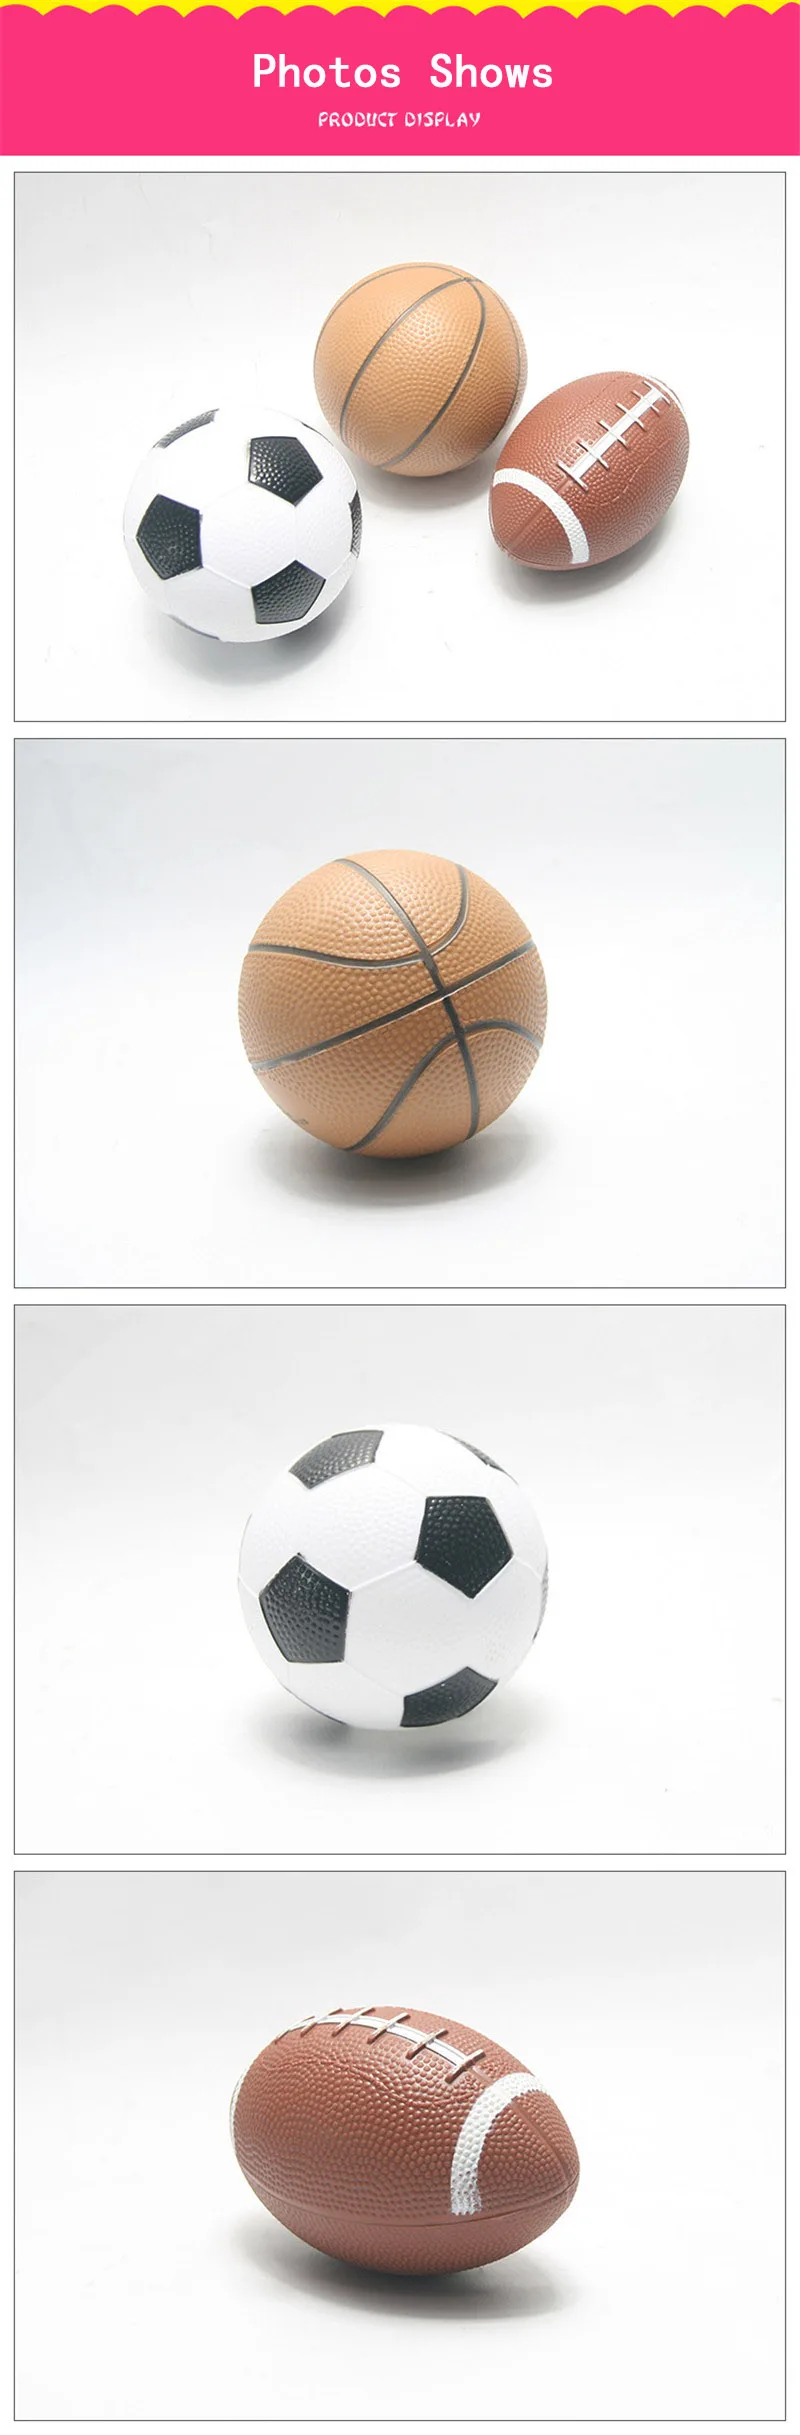 Детские Мини-мячи для регби, футбола, баскетбола, игрушки 12 см, резиновый футбольный мяч для детей, спортивные игрушки, игровой мяч, утепленные надувные мячи